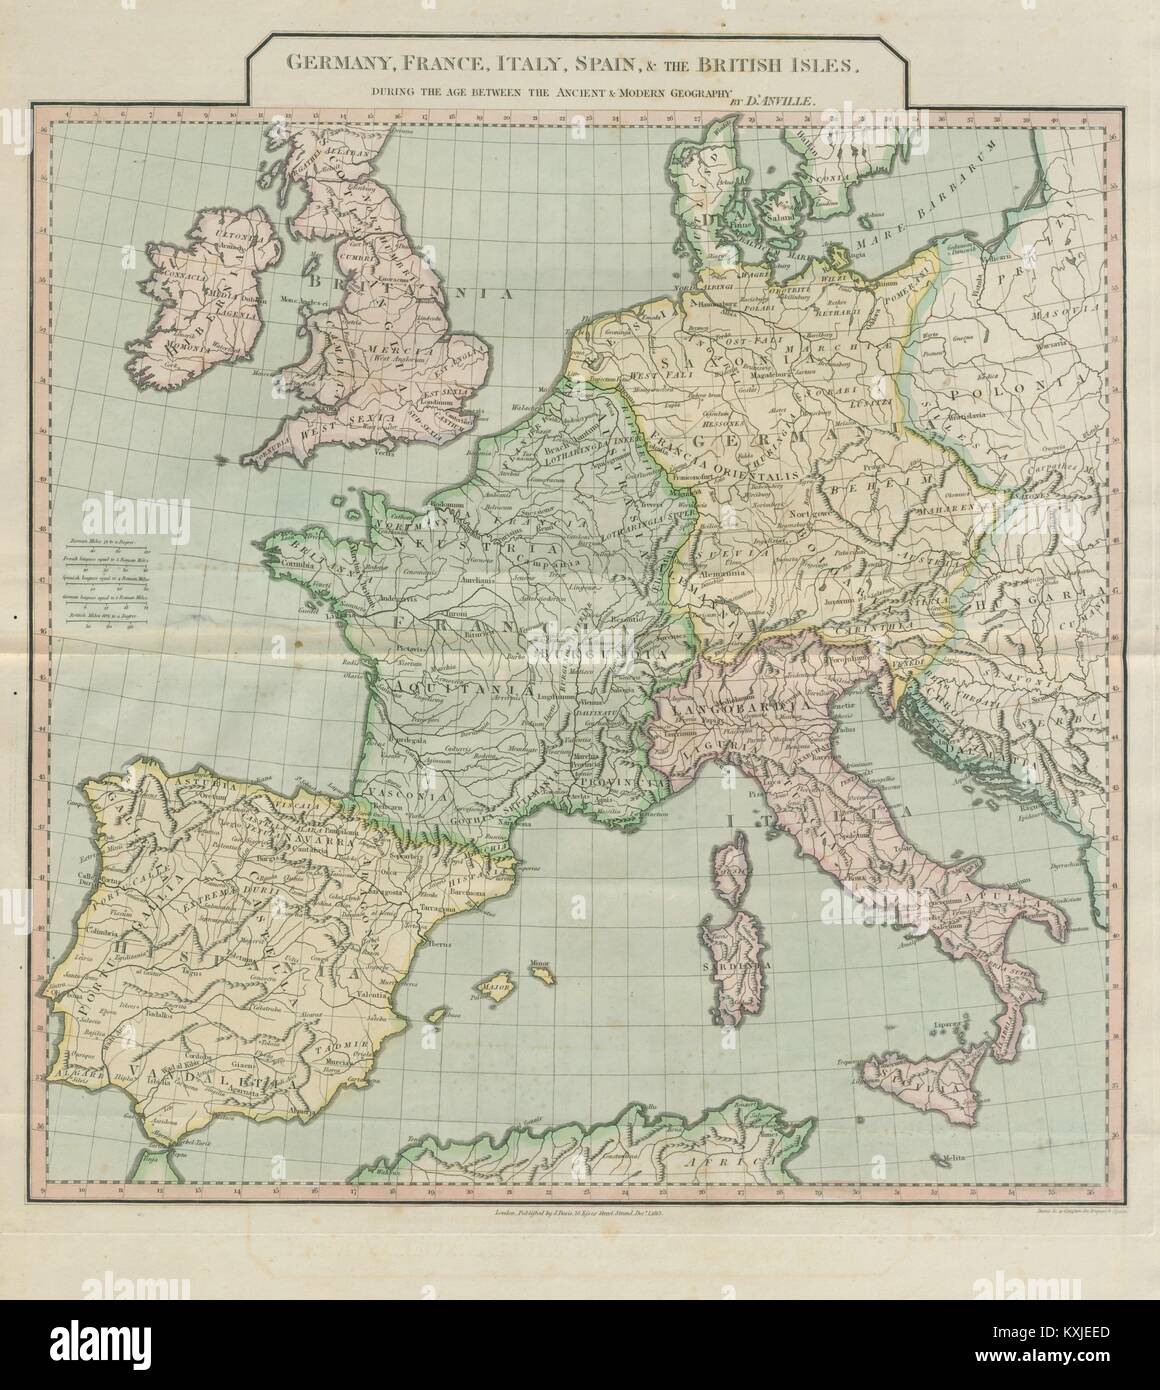 Westeuropa" zwischen der Alten und der Modernen Geographie". D'Anville 1815 Karte Stockfoto